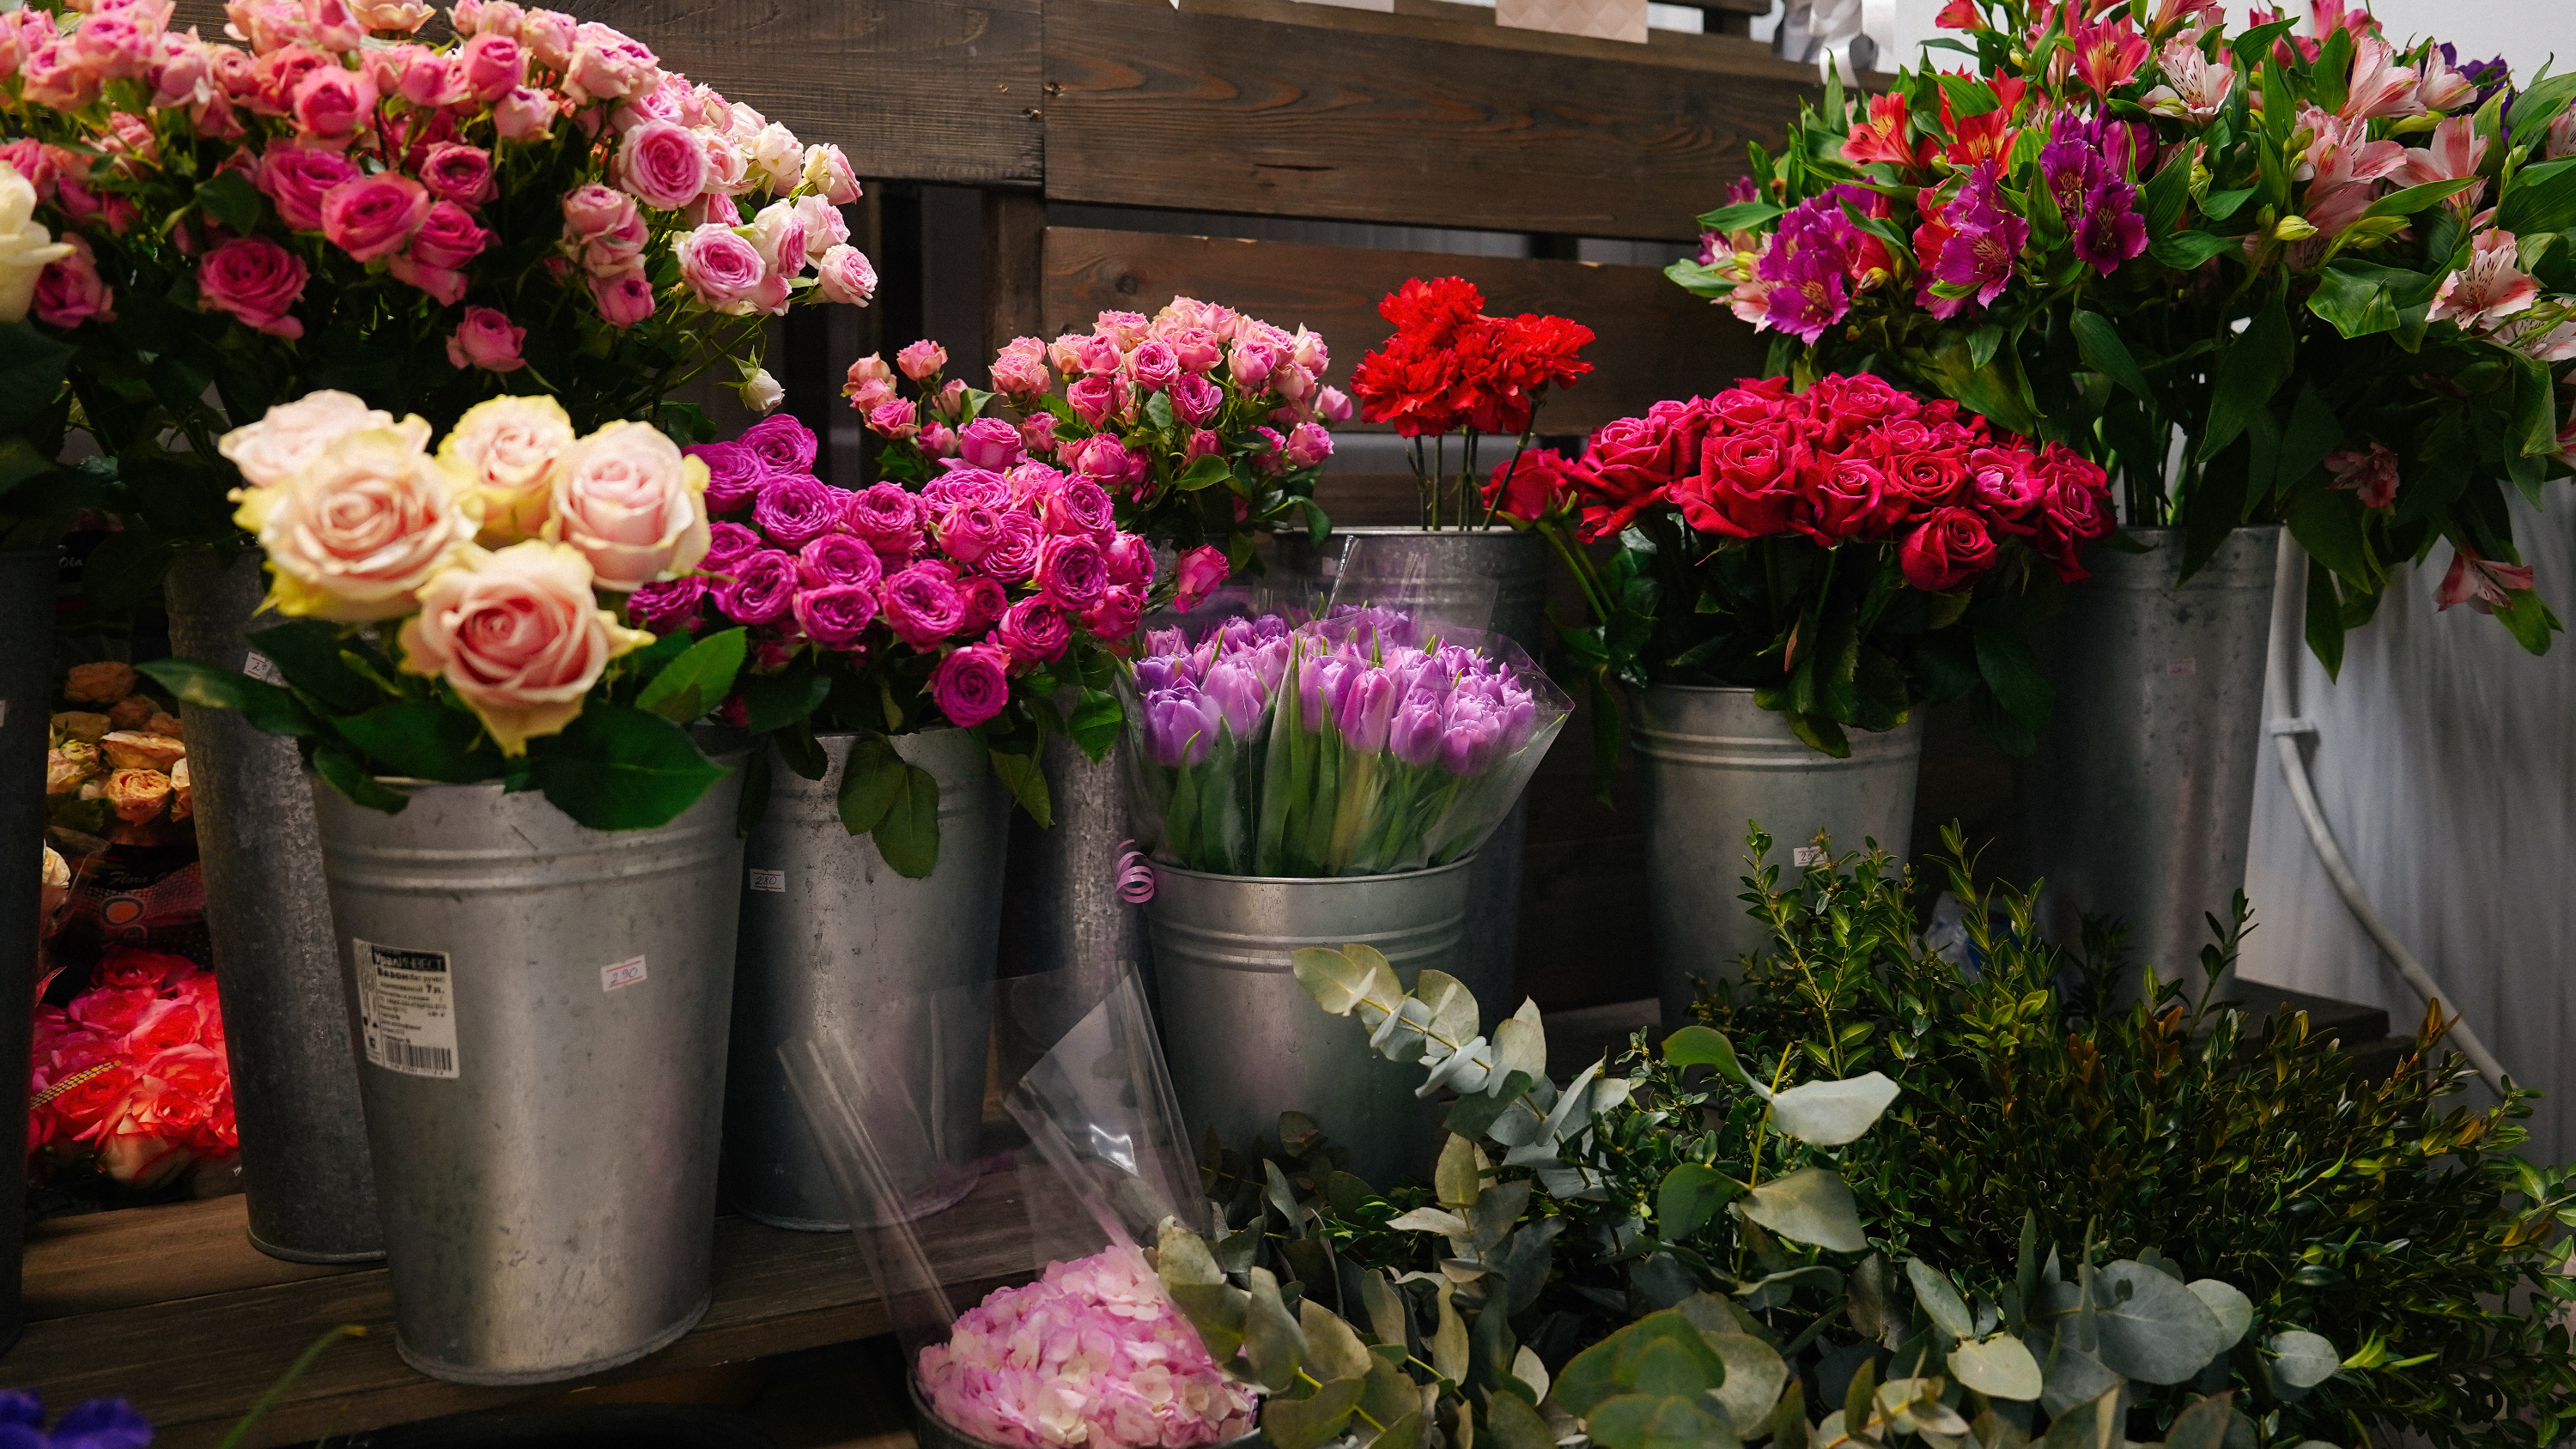 «Грустно, что цены потом неохотно опускают». Что происходит с рынком цветов в Краснодаре перед праздниками